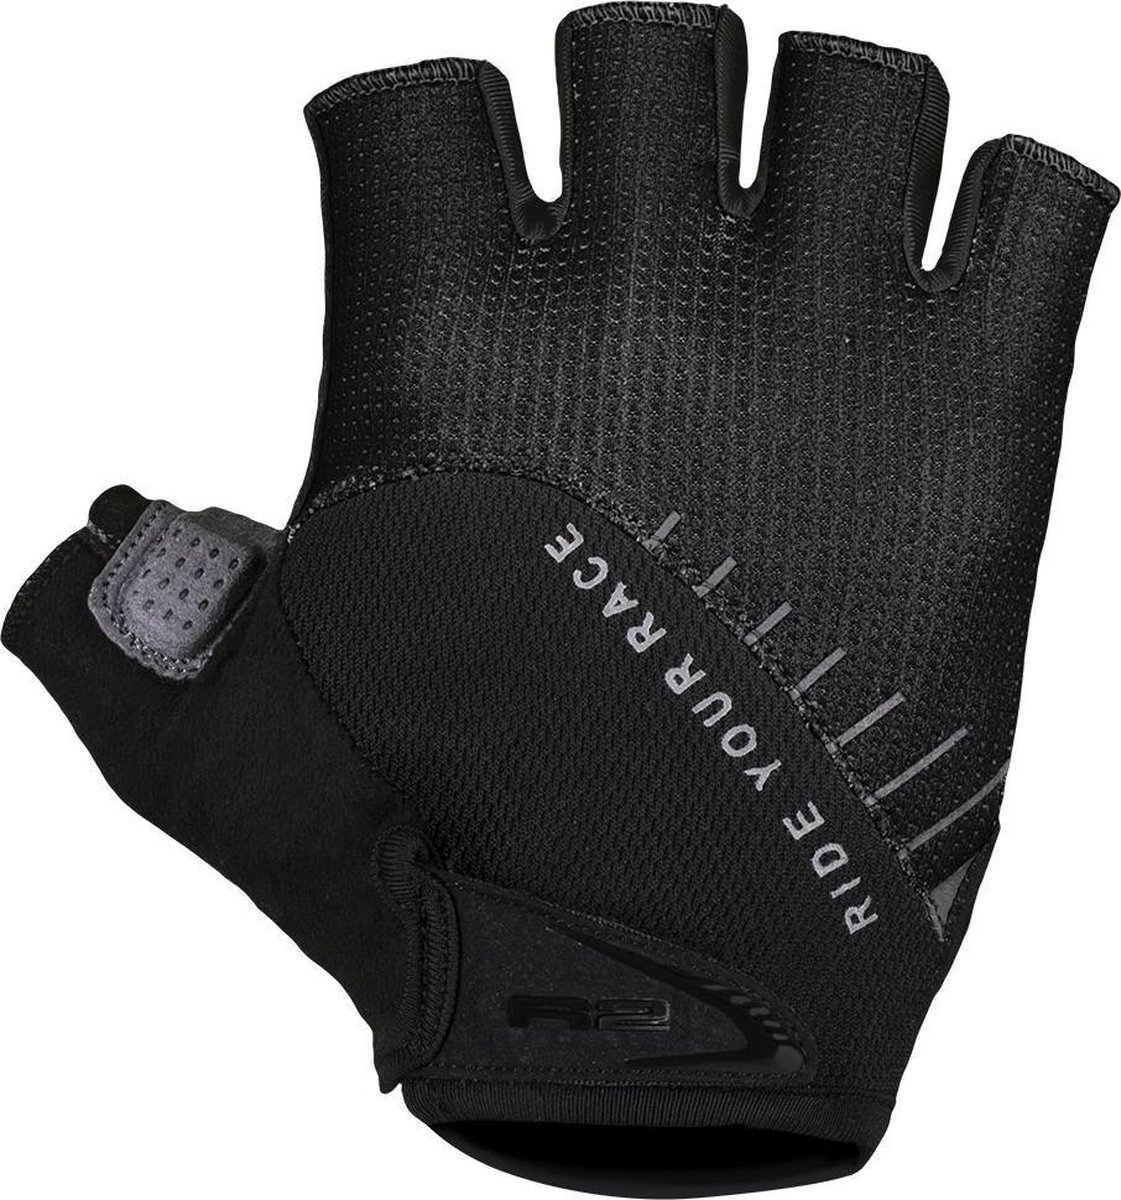 Vouk ProGel Fiets Handschoenen - Luxe handschoenen met verbeterd Comfort en Veiligheid - Geen kramp meer in de handen - Zwart - Maat XXL (23 - 24cm)